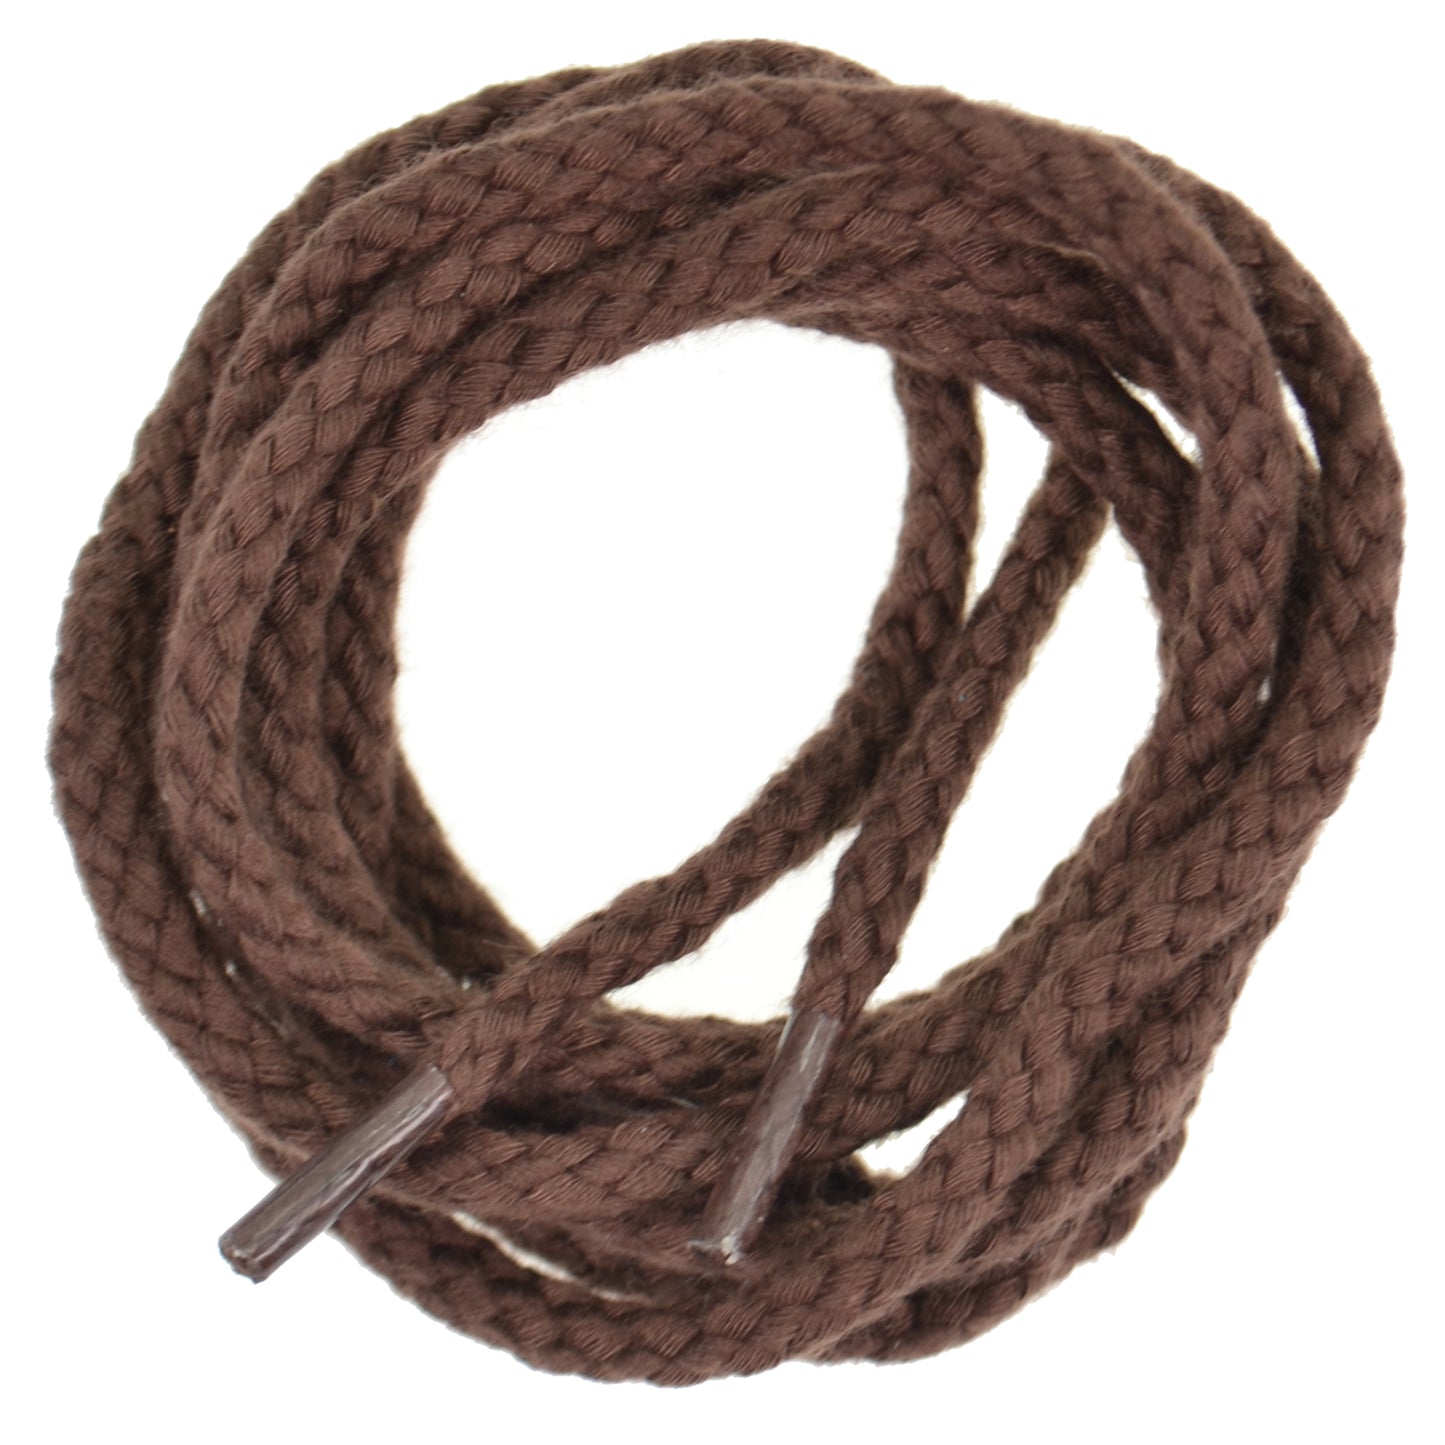 140cm Heavy Cord Shoe Laces - Brown